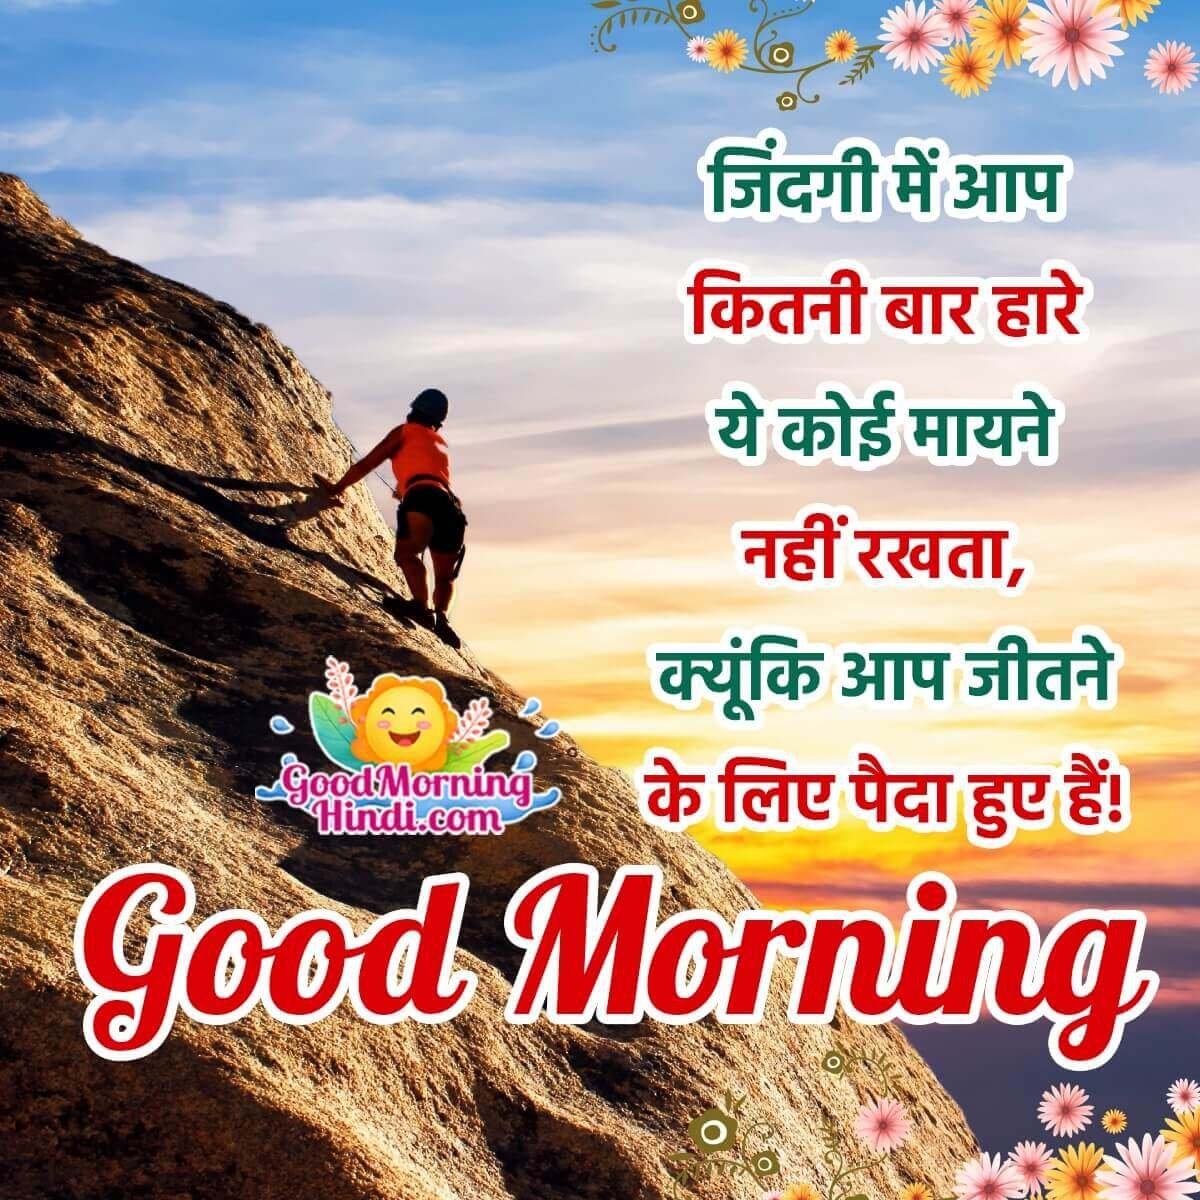 Wonderful Good Morning Status Image In Hindi